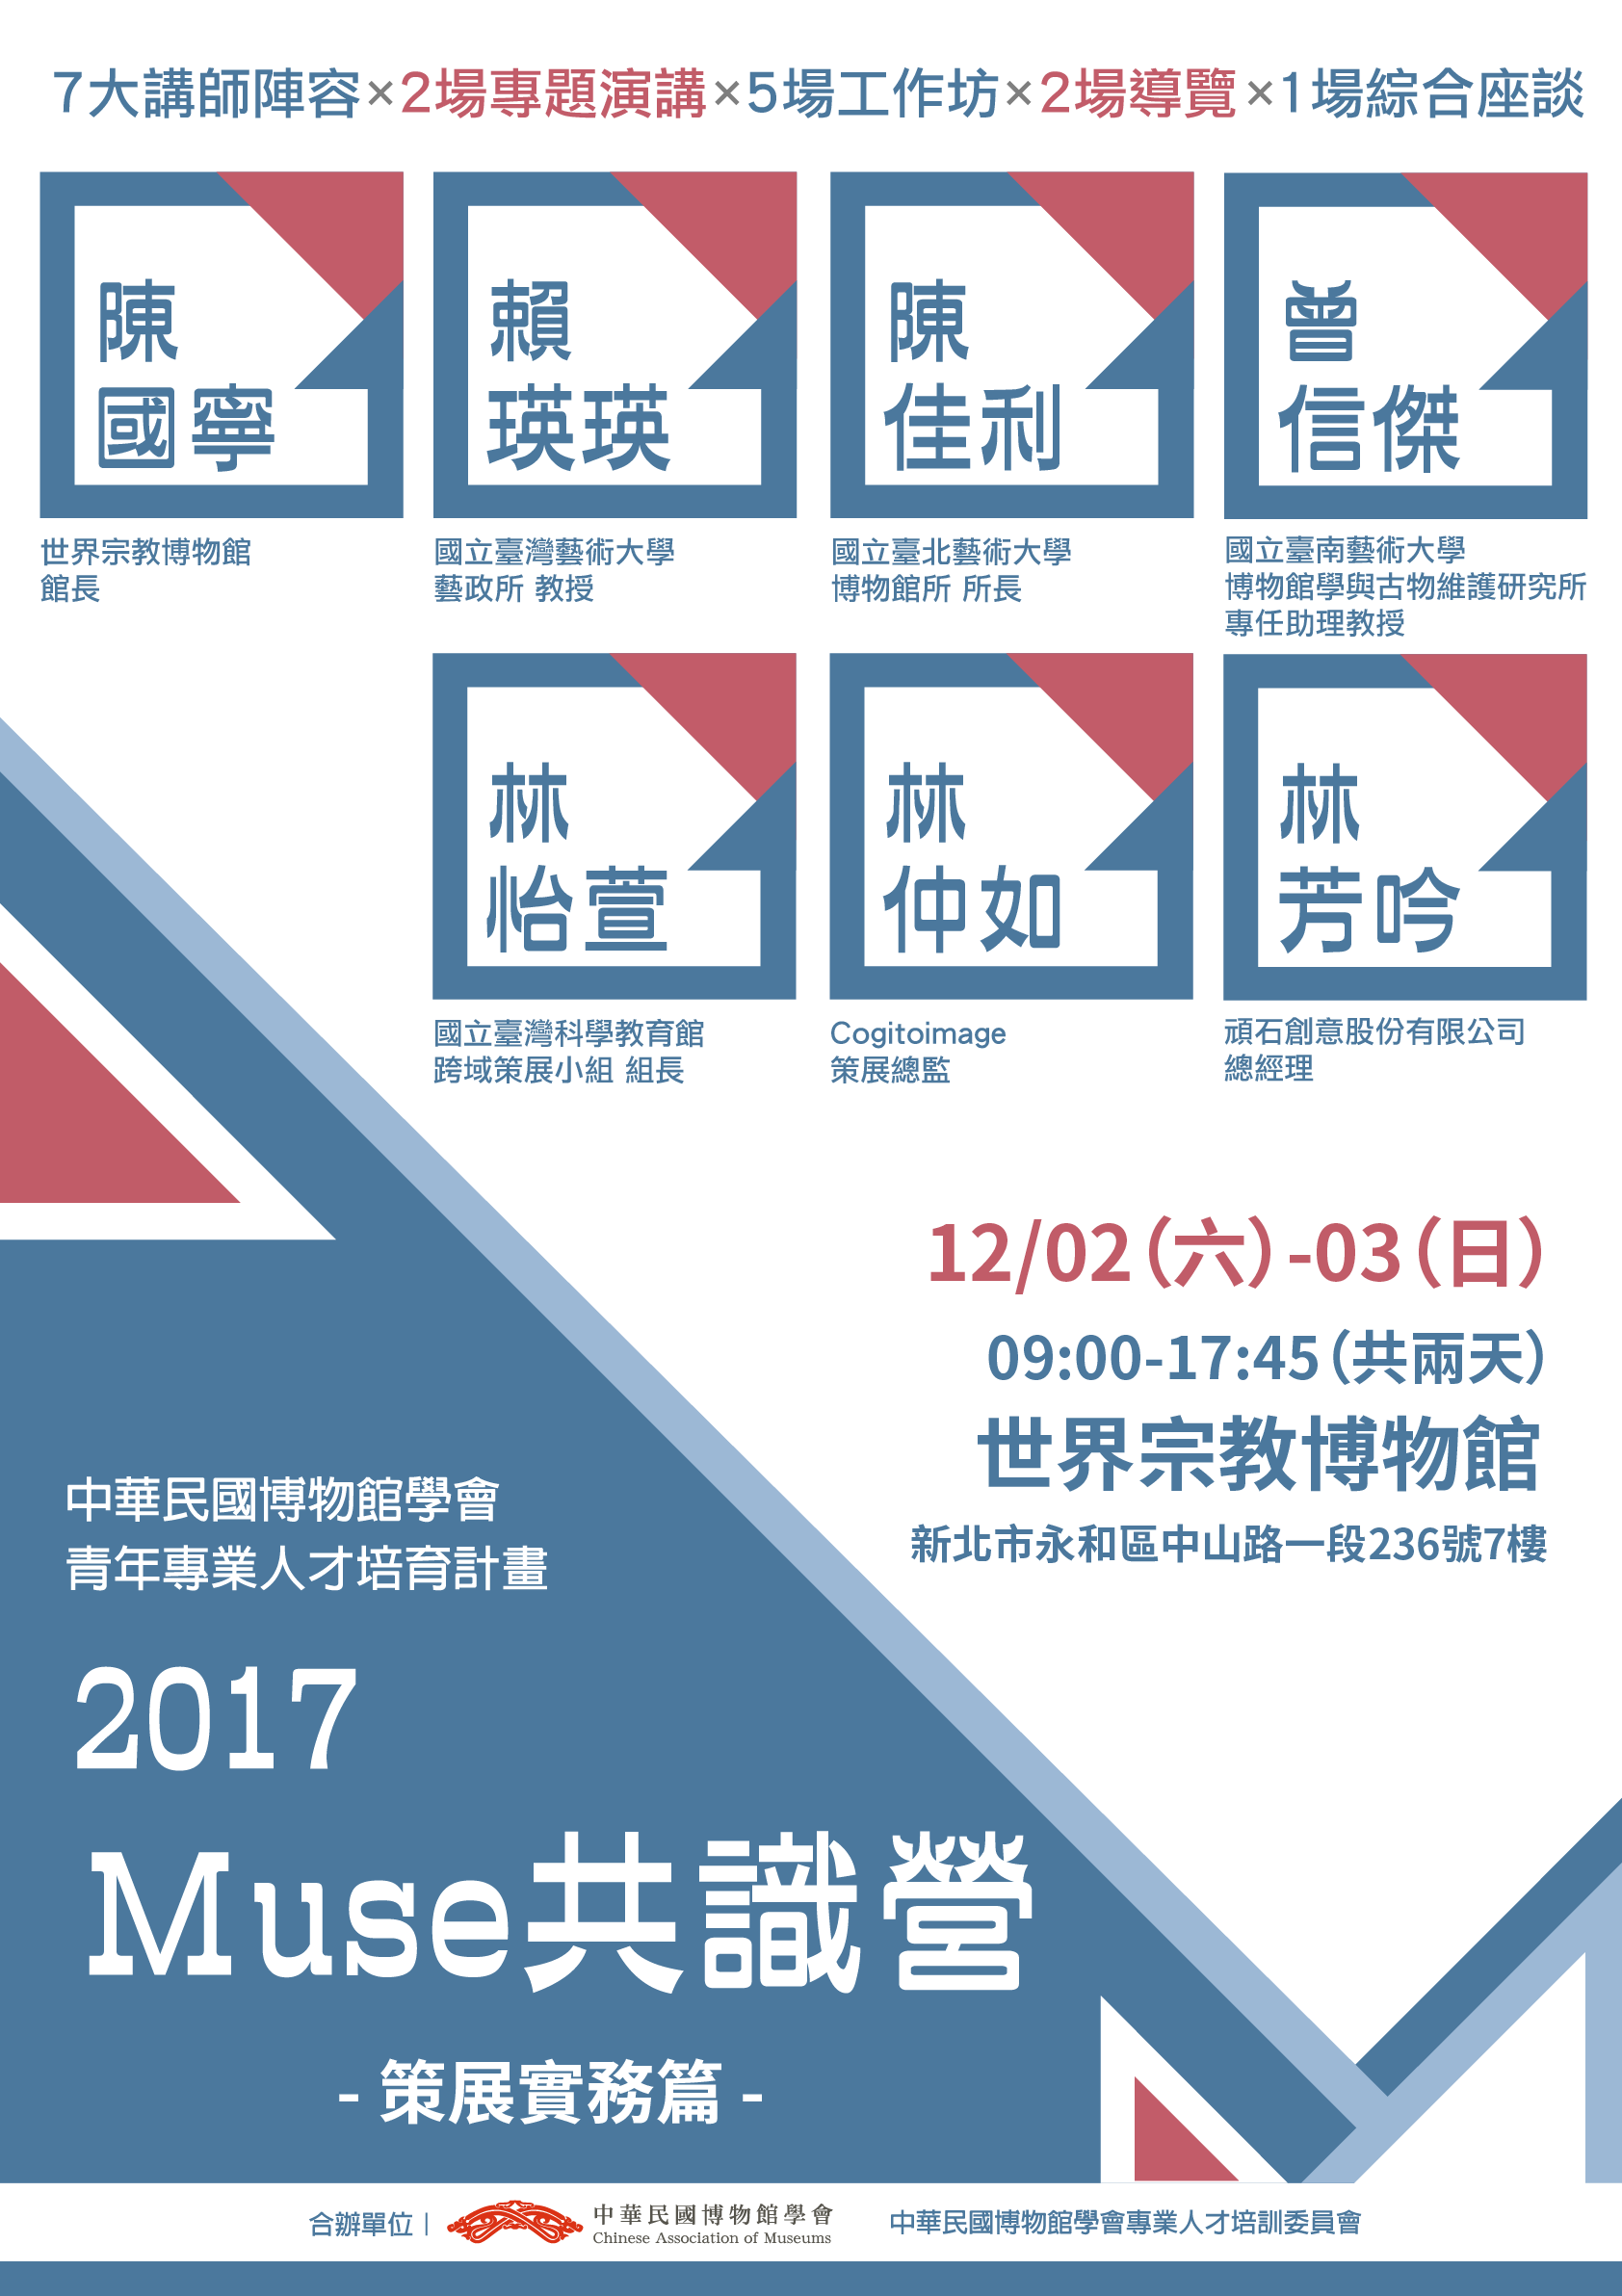 【中華民國博物館學會】2017/12/2-3［Muse共識營］策展實務篇，歡迎40歲以下博物館從業人員及相關系所學生報名參加！